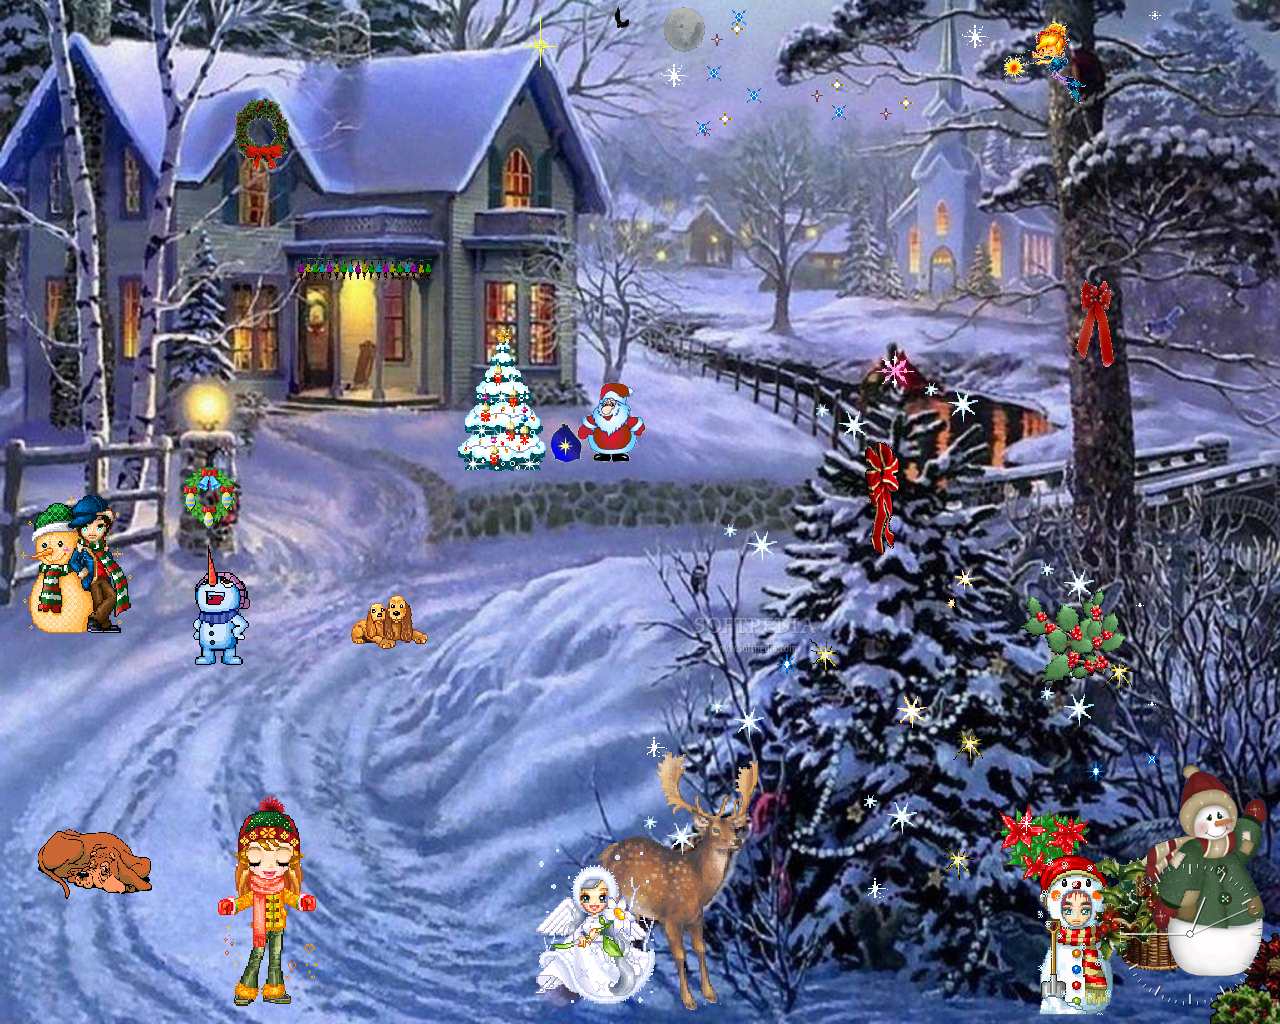  50 Free Wallpaper Winter Christmas Scenes WallpaperSafari com